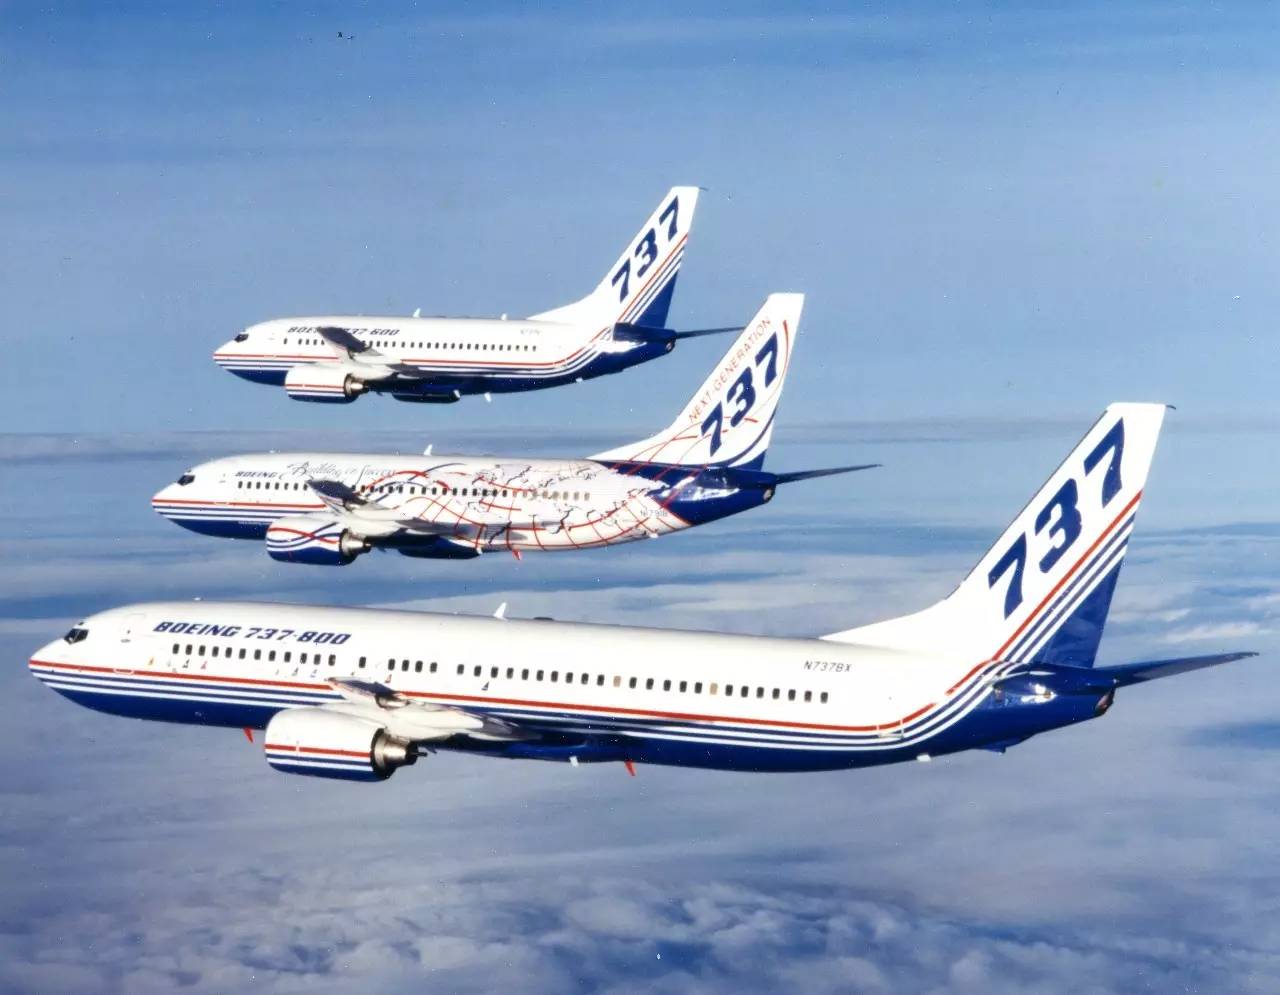 新一代737是737家族的第三代产品,波音在1998年实现了图中三种机型的